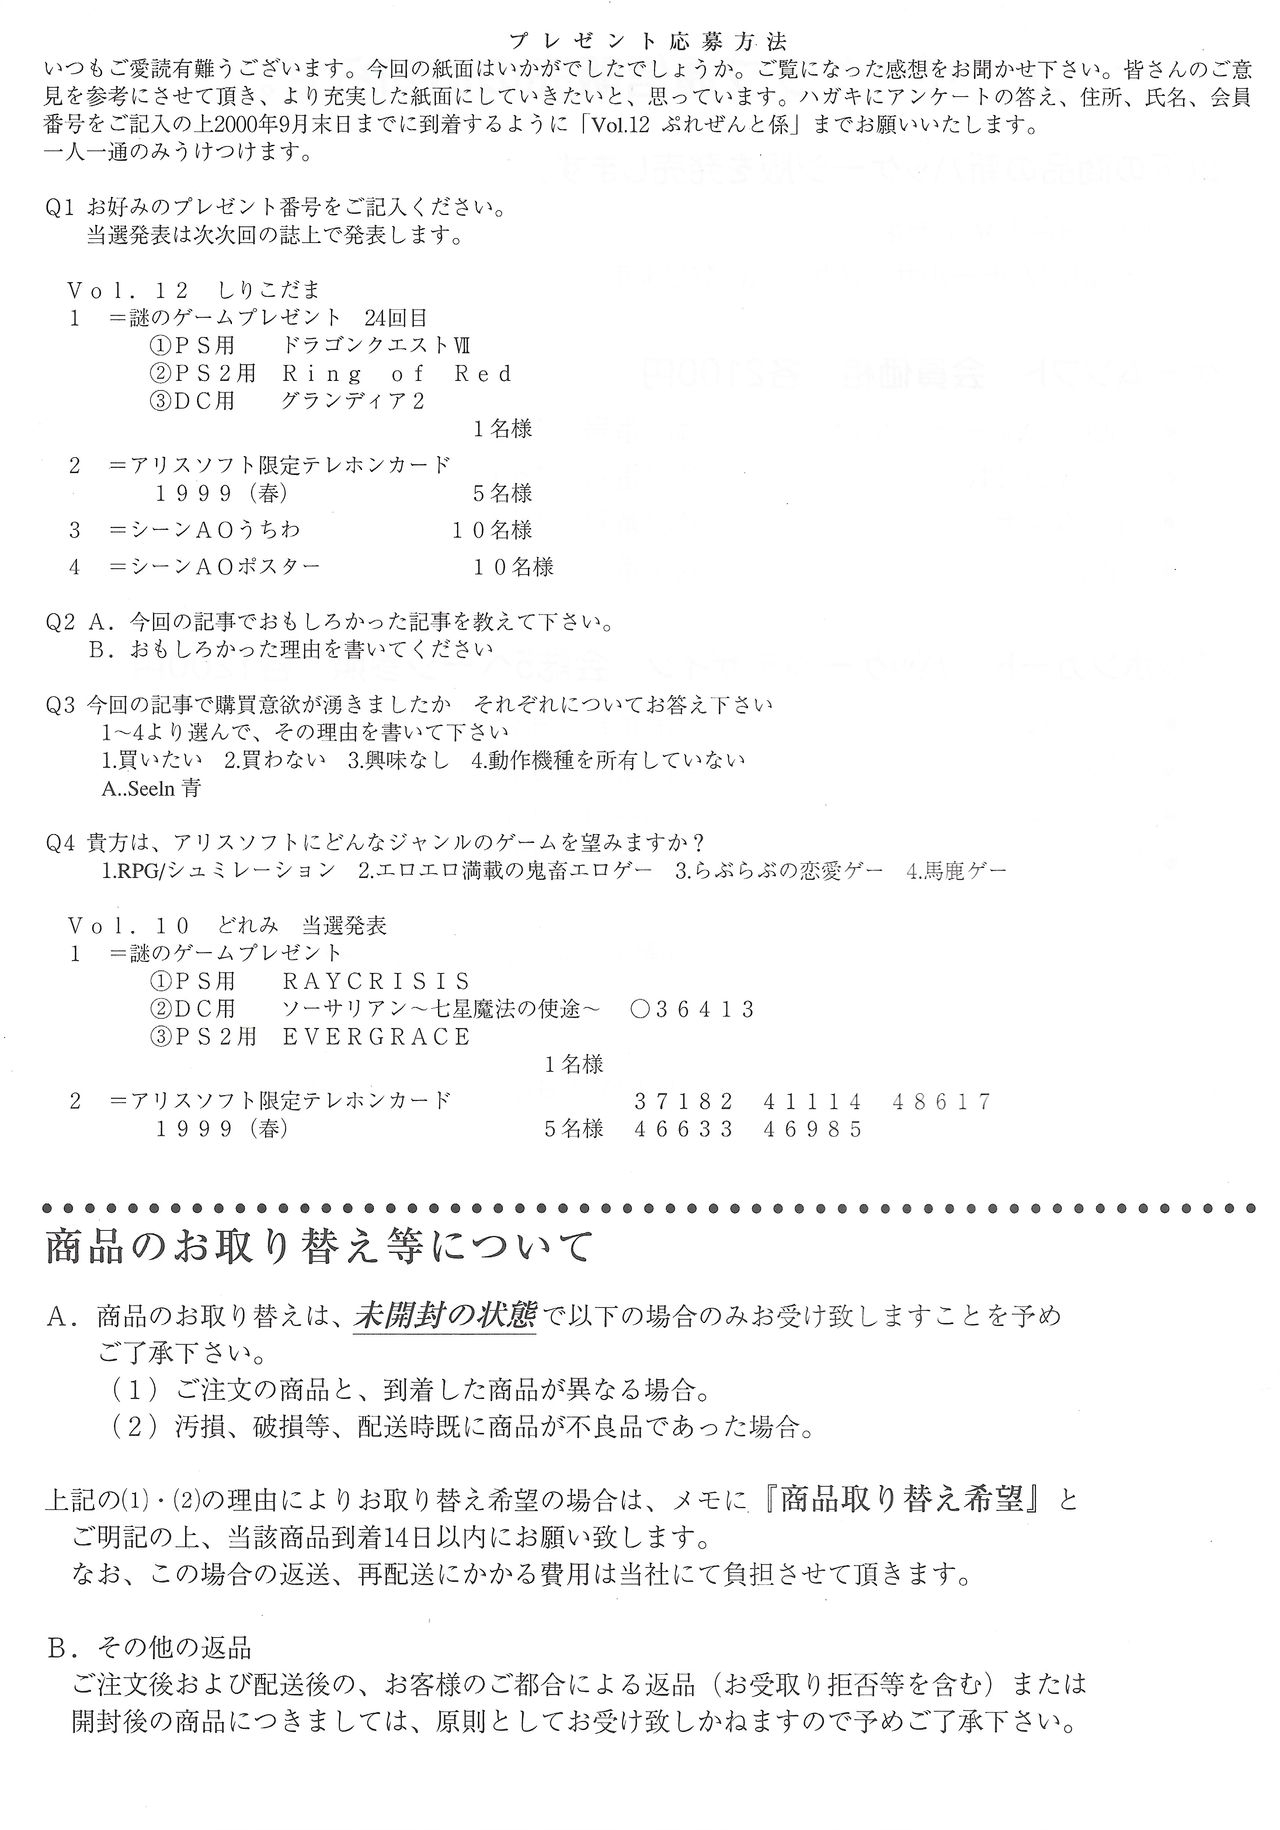 Arisu no Denchi Bakudan Vol. 12 27